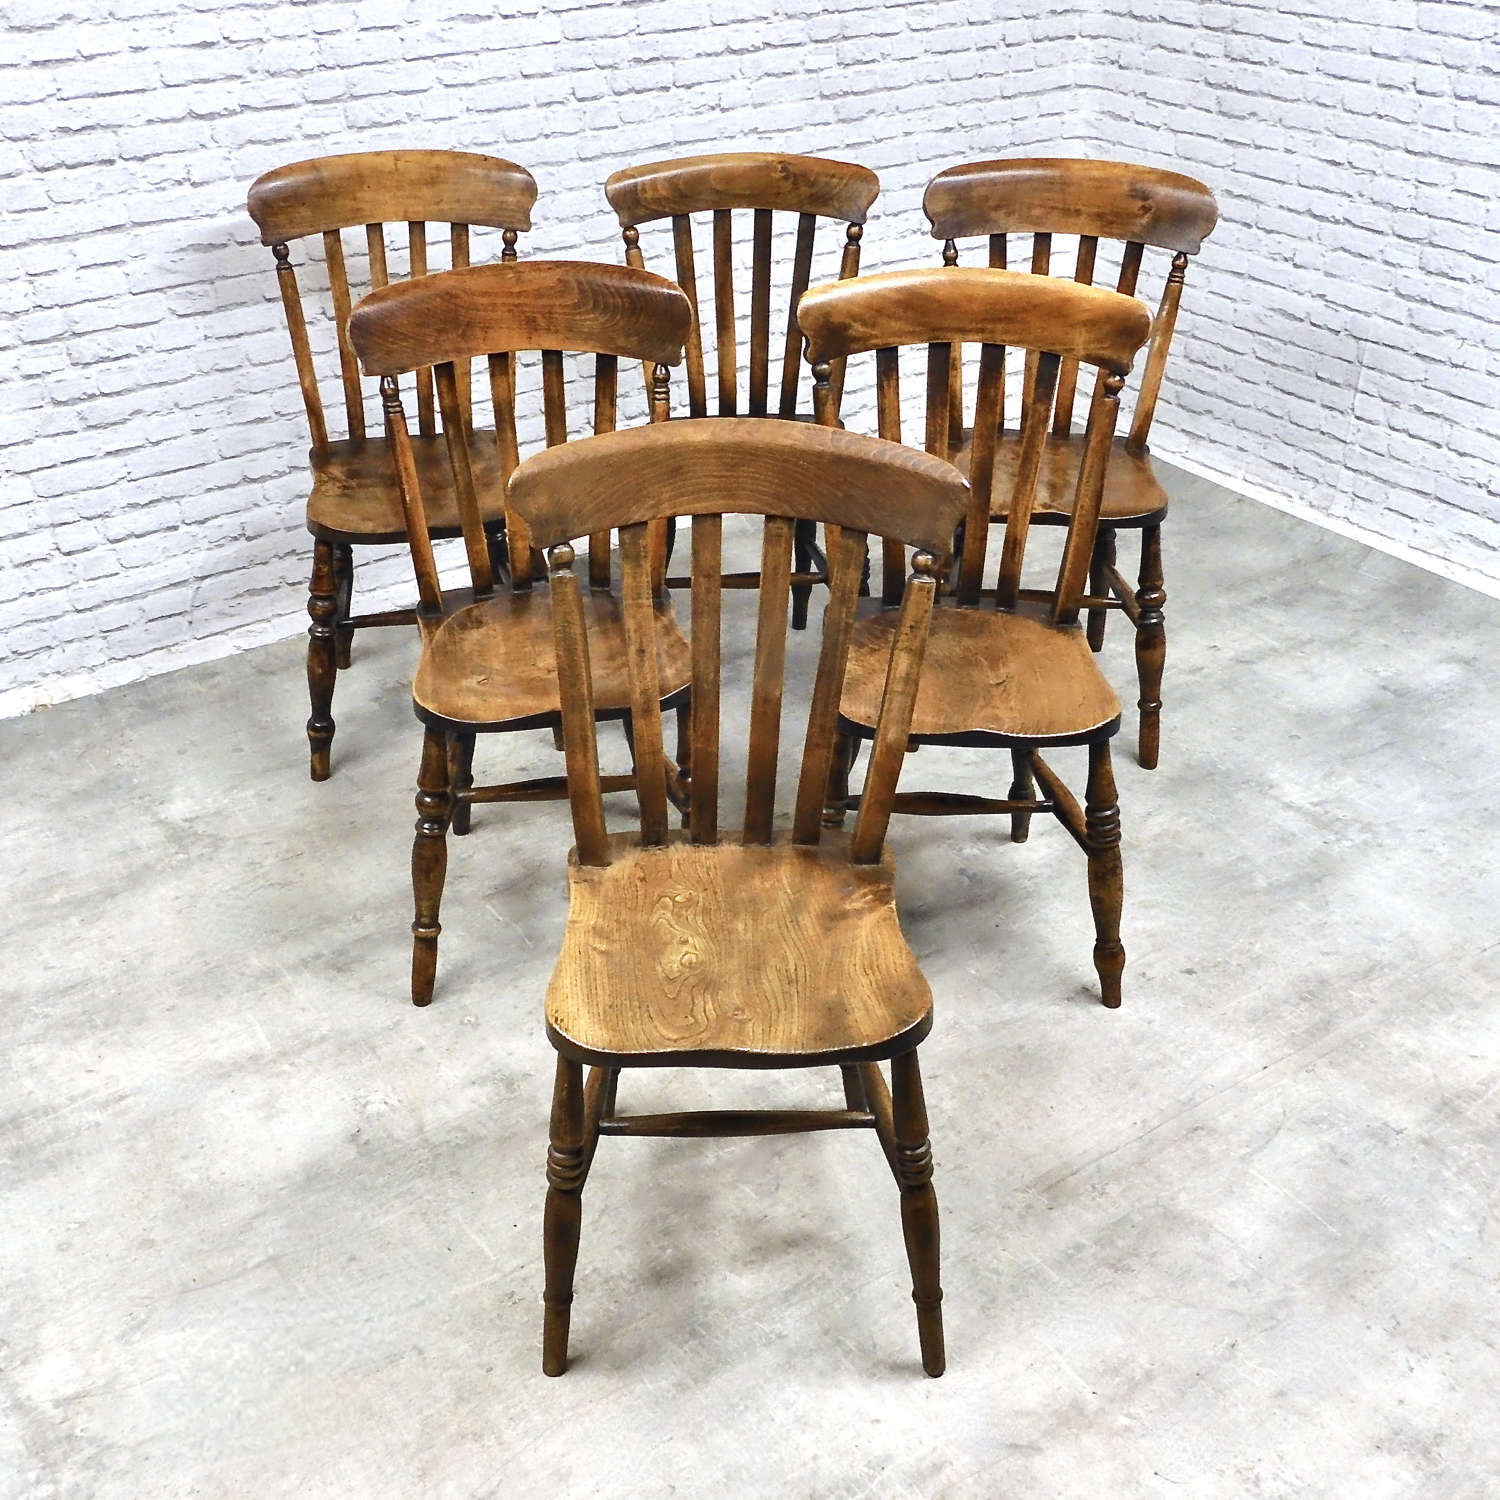 C19th Farmhouse kitchen Chairs